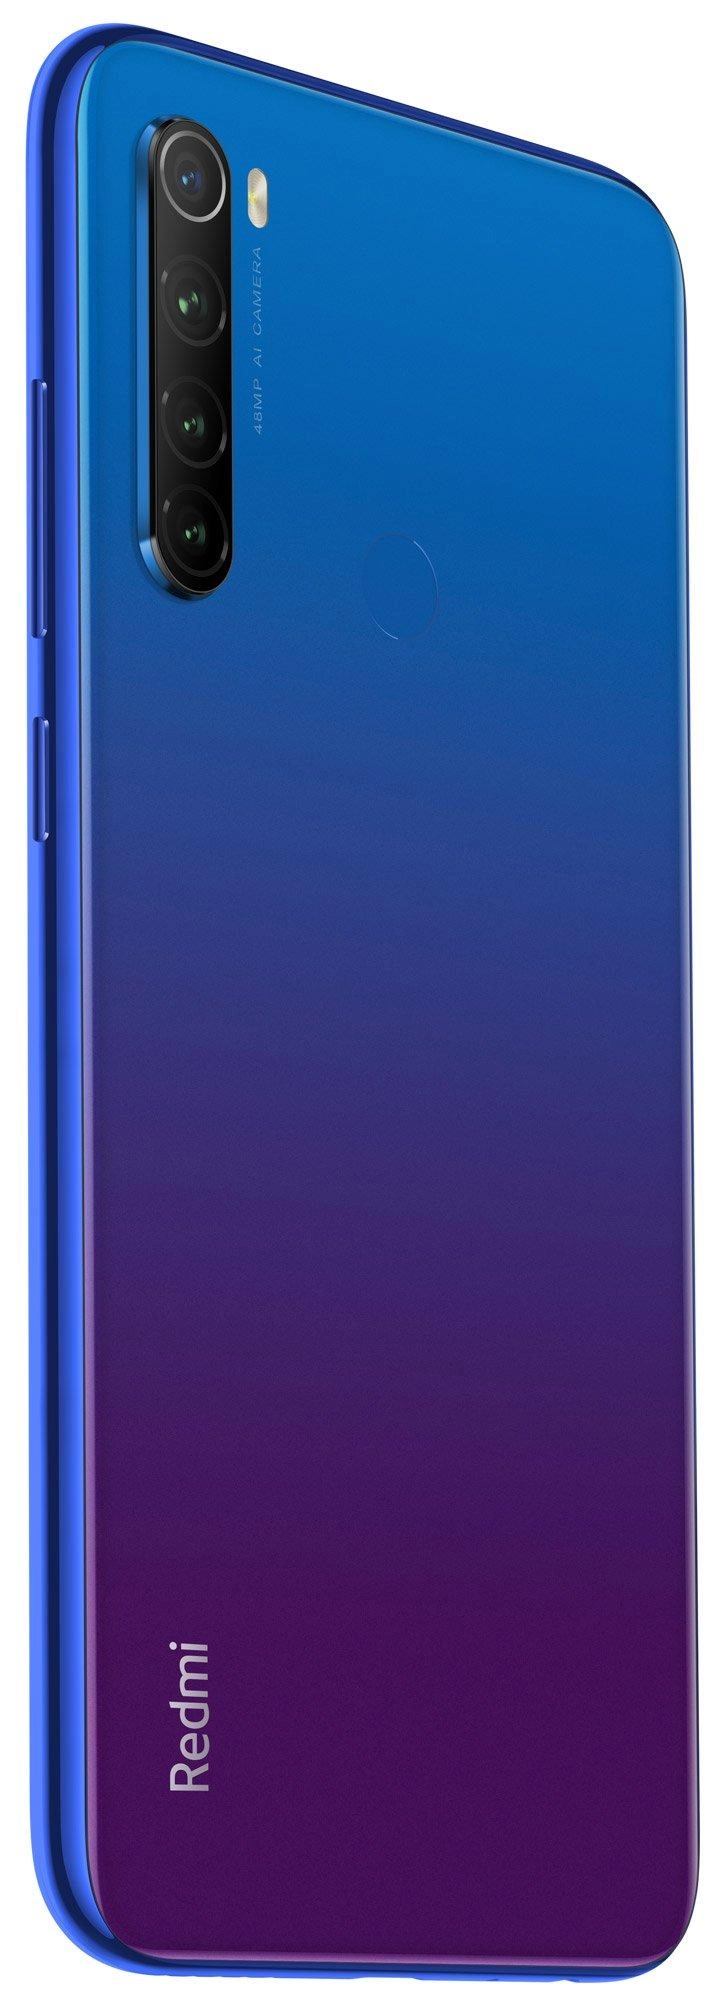 Цена Смартфон Xiaomi Redmi Note 8T 4/128Gb Blue